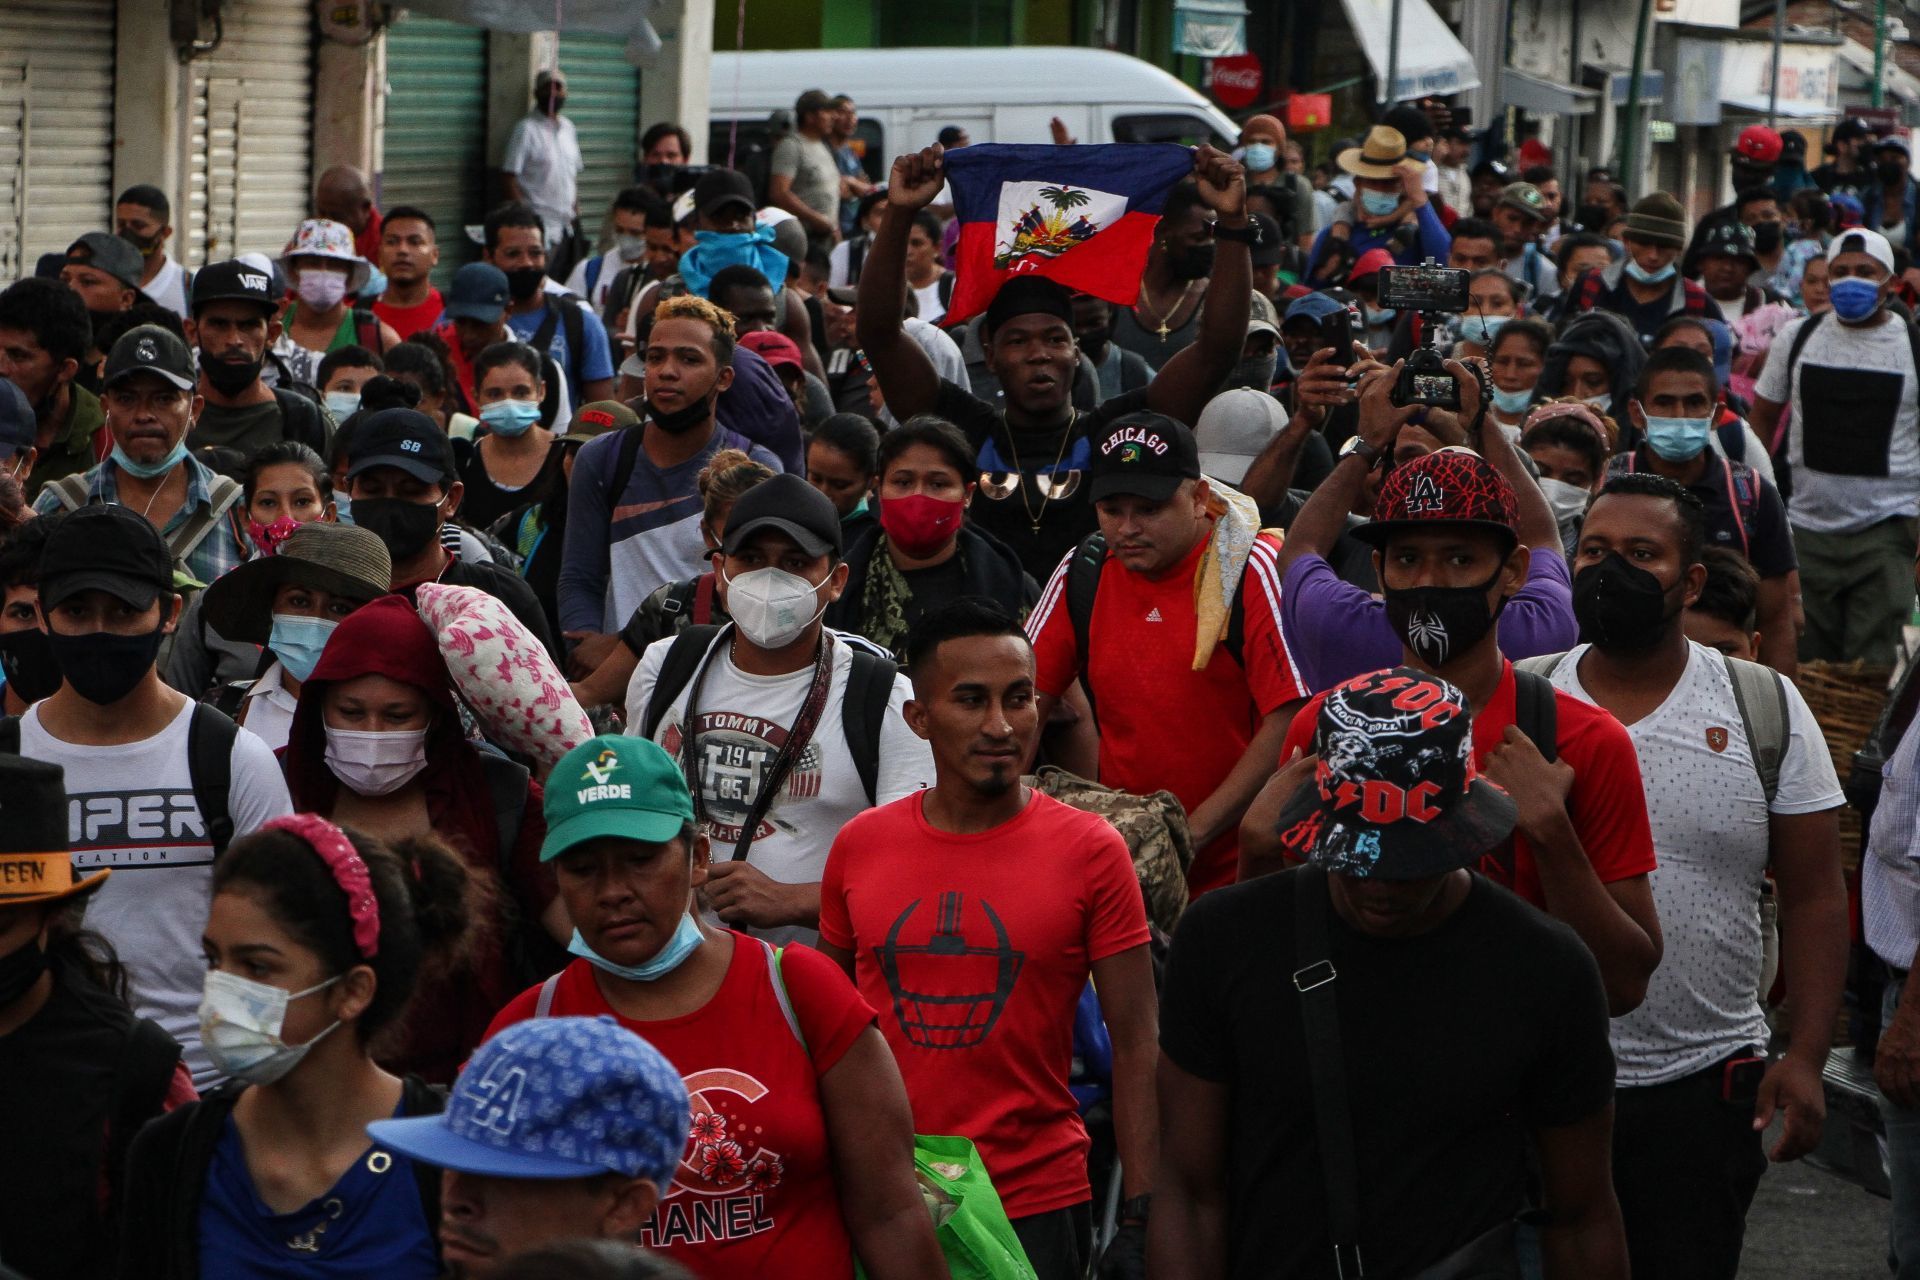 TAPACHULA, CHIAPAS, 04SEPTIEMBRE2021.- Al menos 300 migrantes salieron esta mañana de Tapachula específicamente de la plaza central camino al municipio de Huixtla. Los migrantes pretenden cruzar nuestro país en busca de llegar a la frontera norte .
ROGELIO MORALES /CUARTOSCURO